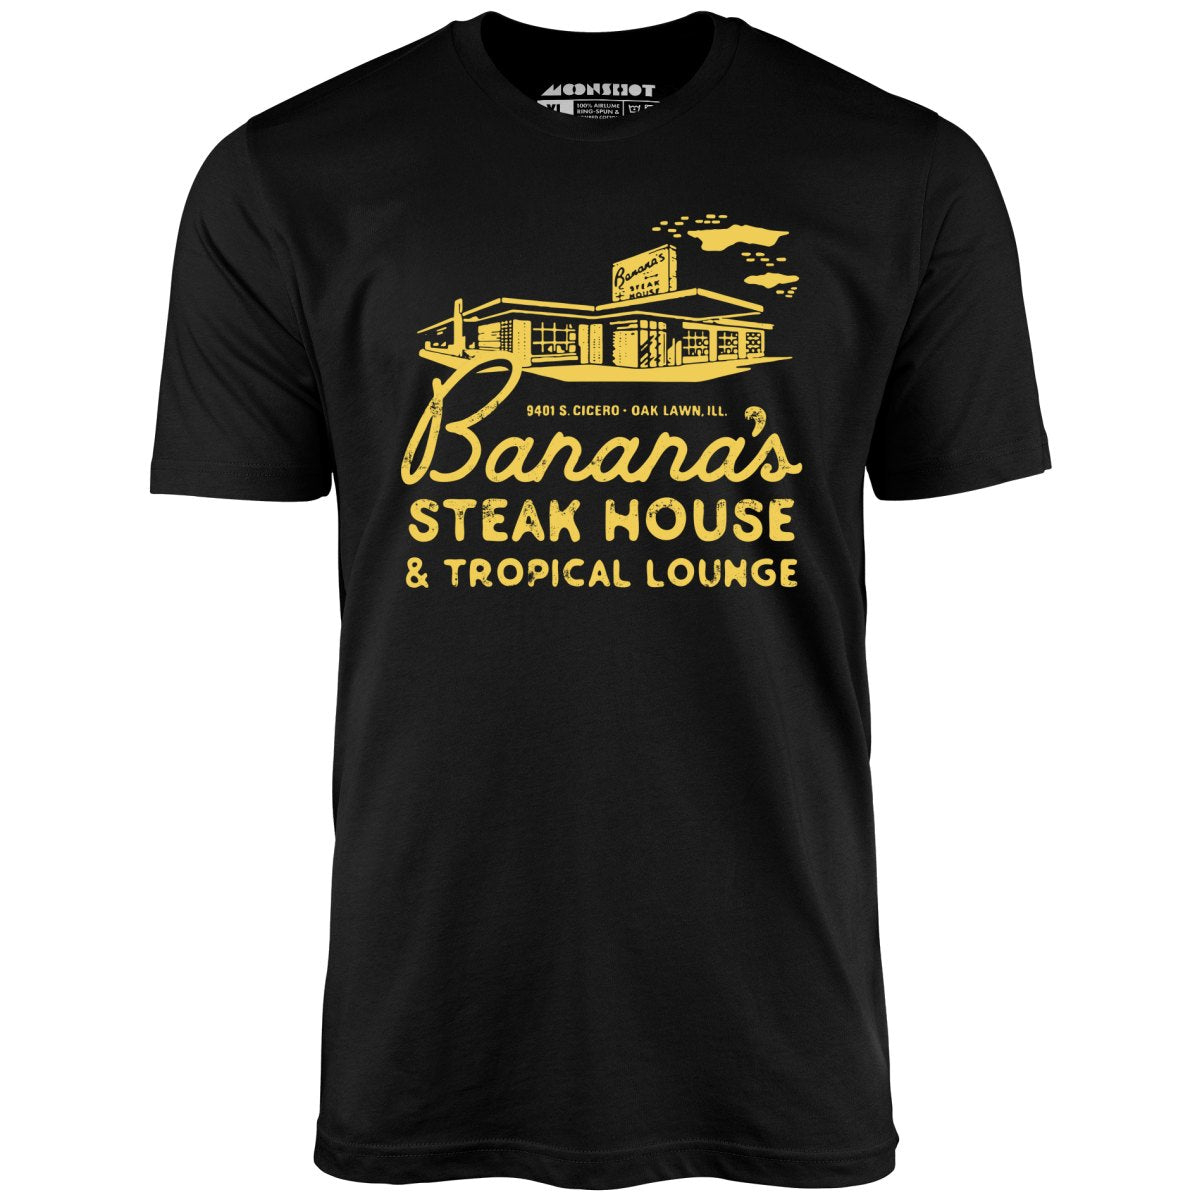 Banana's Steak House - Oak Lawn, Il - Vintage Restaurant - Unisex T-Shirt